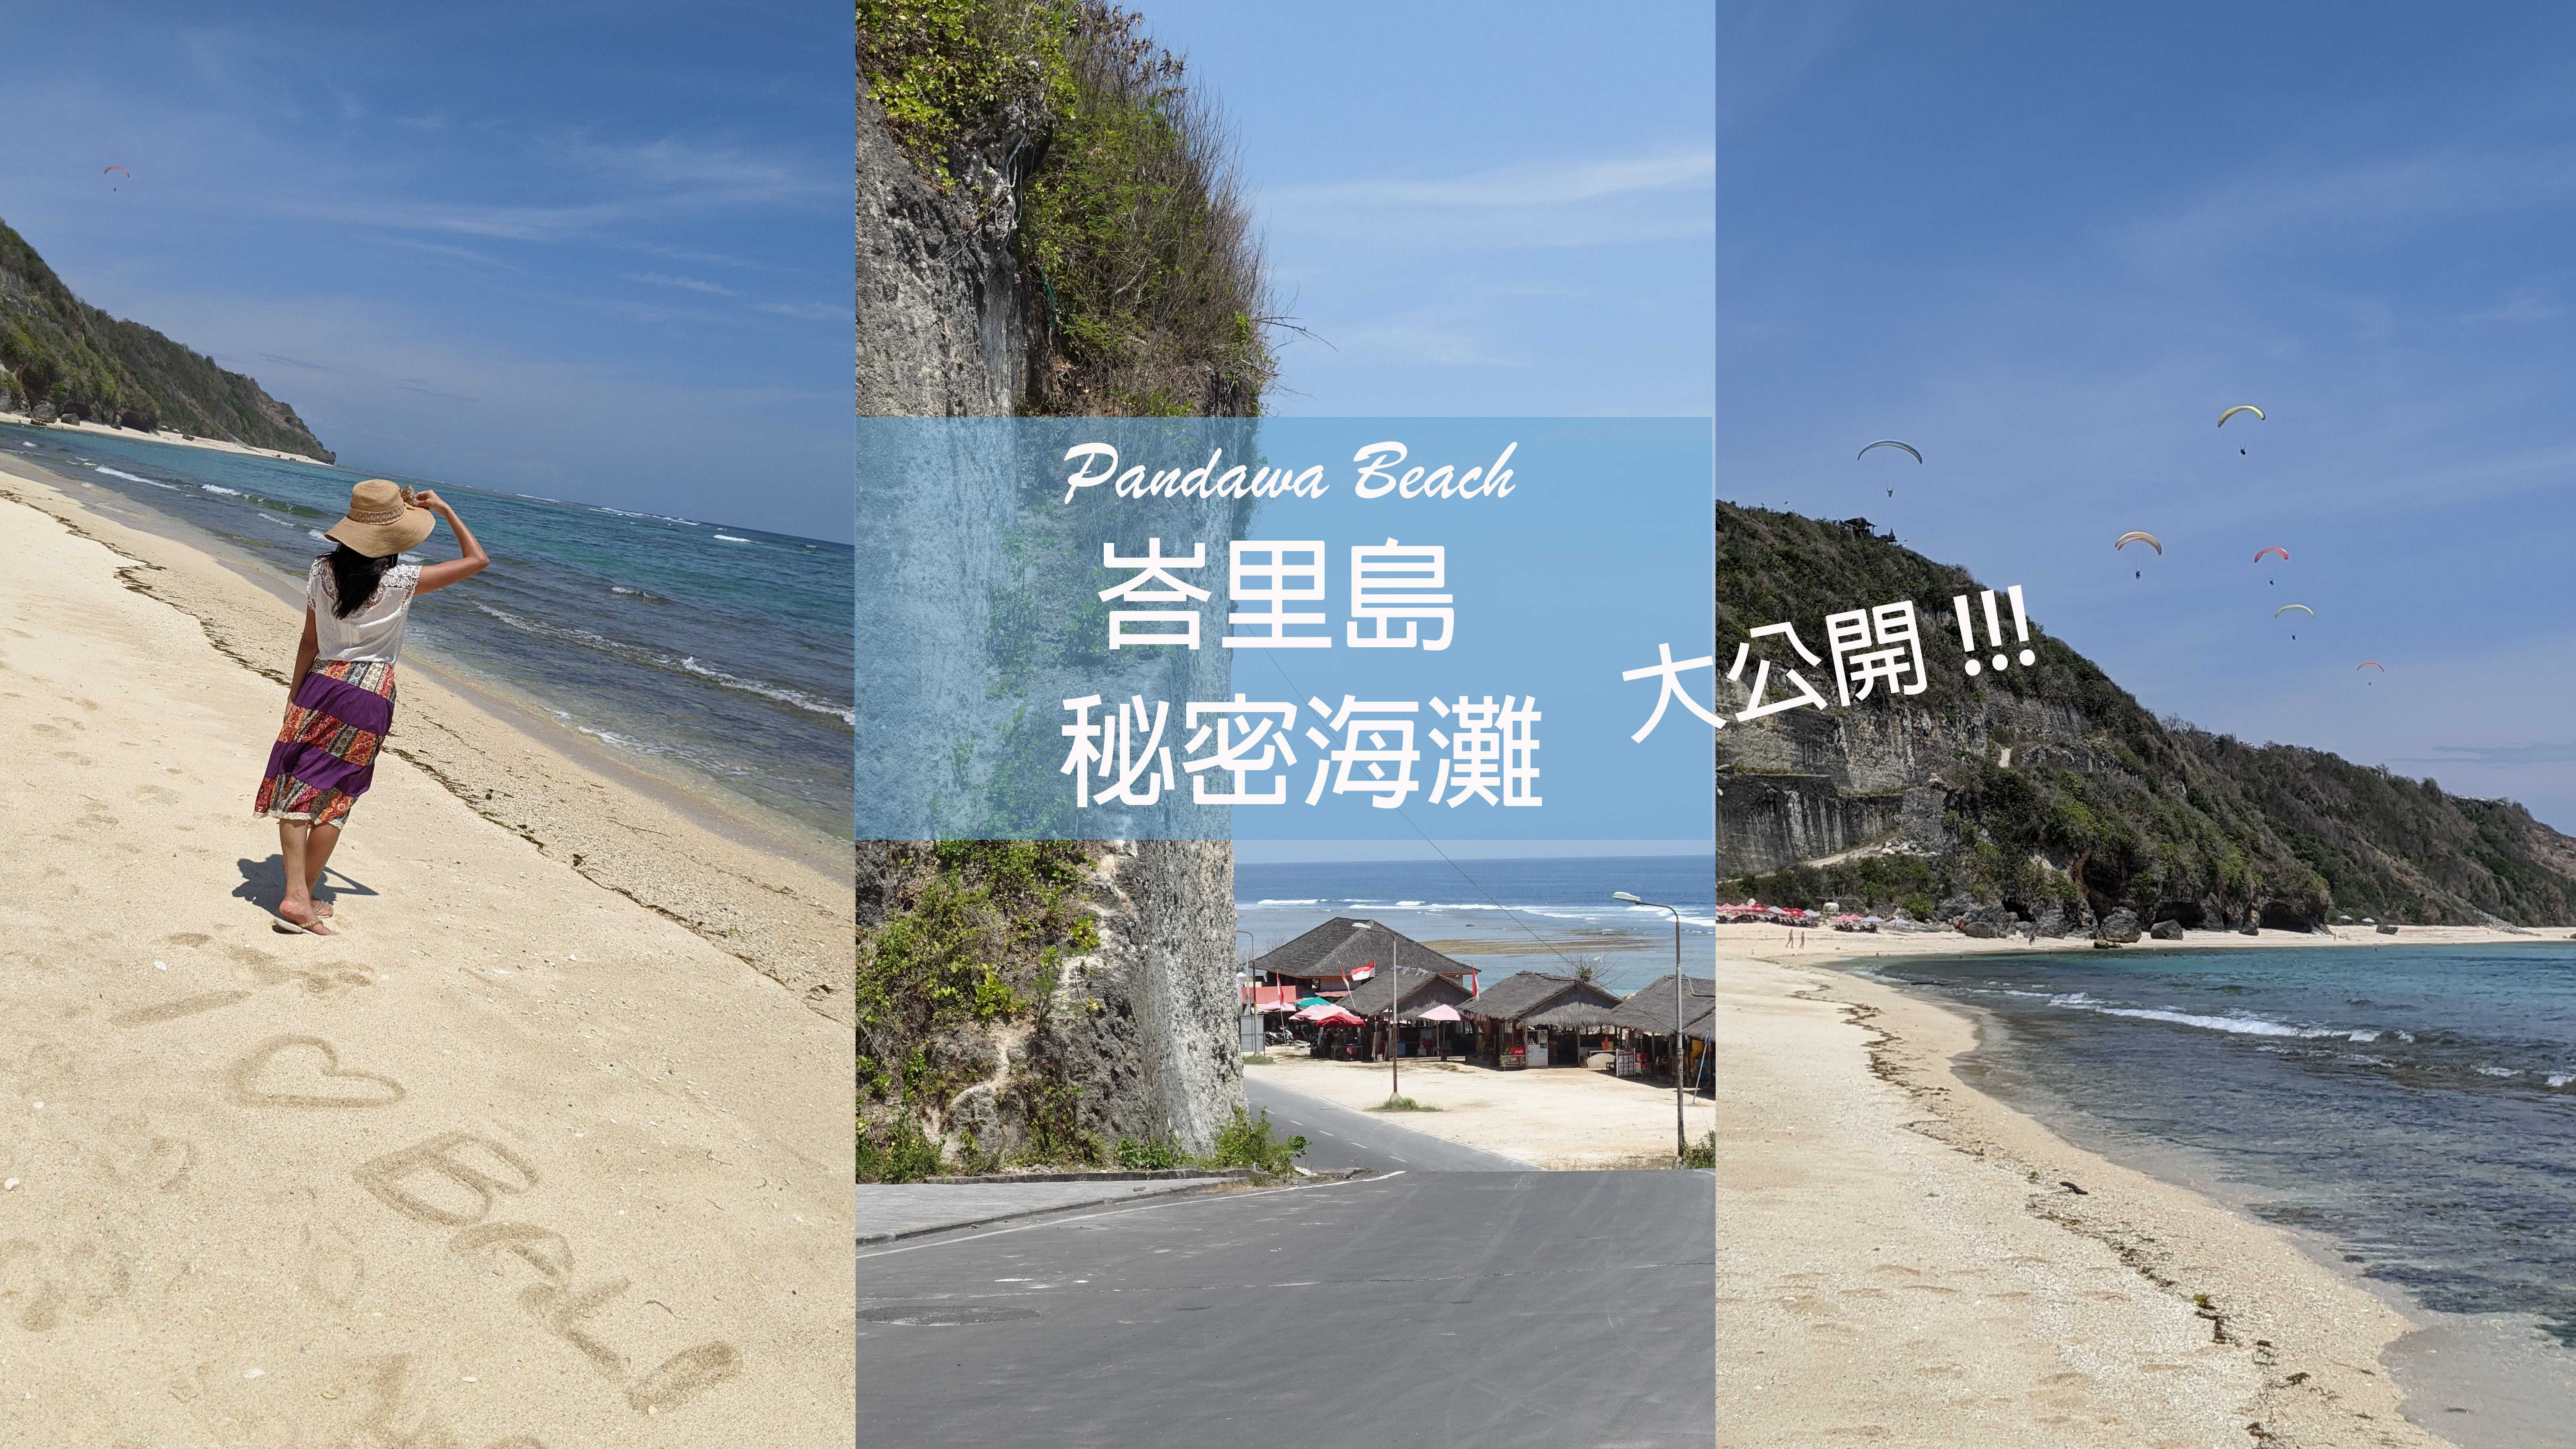 【峇里島自由行】峇里島秘密海灘在這裡！｜潘達瓦海灘 Pandawa Beach